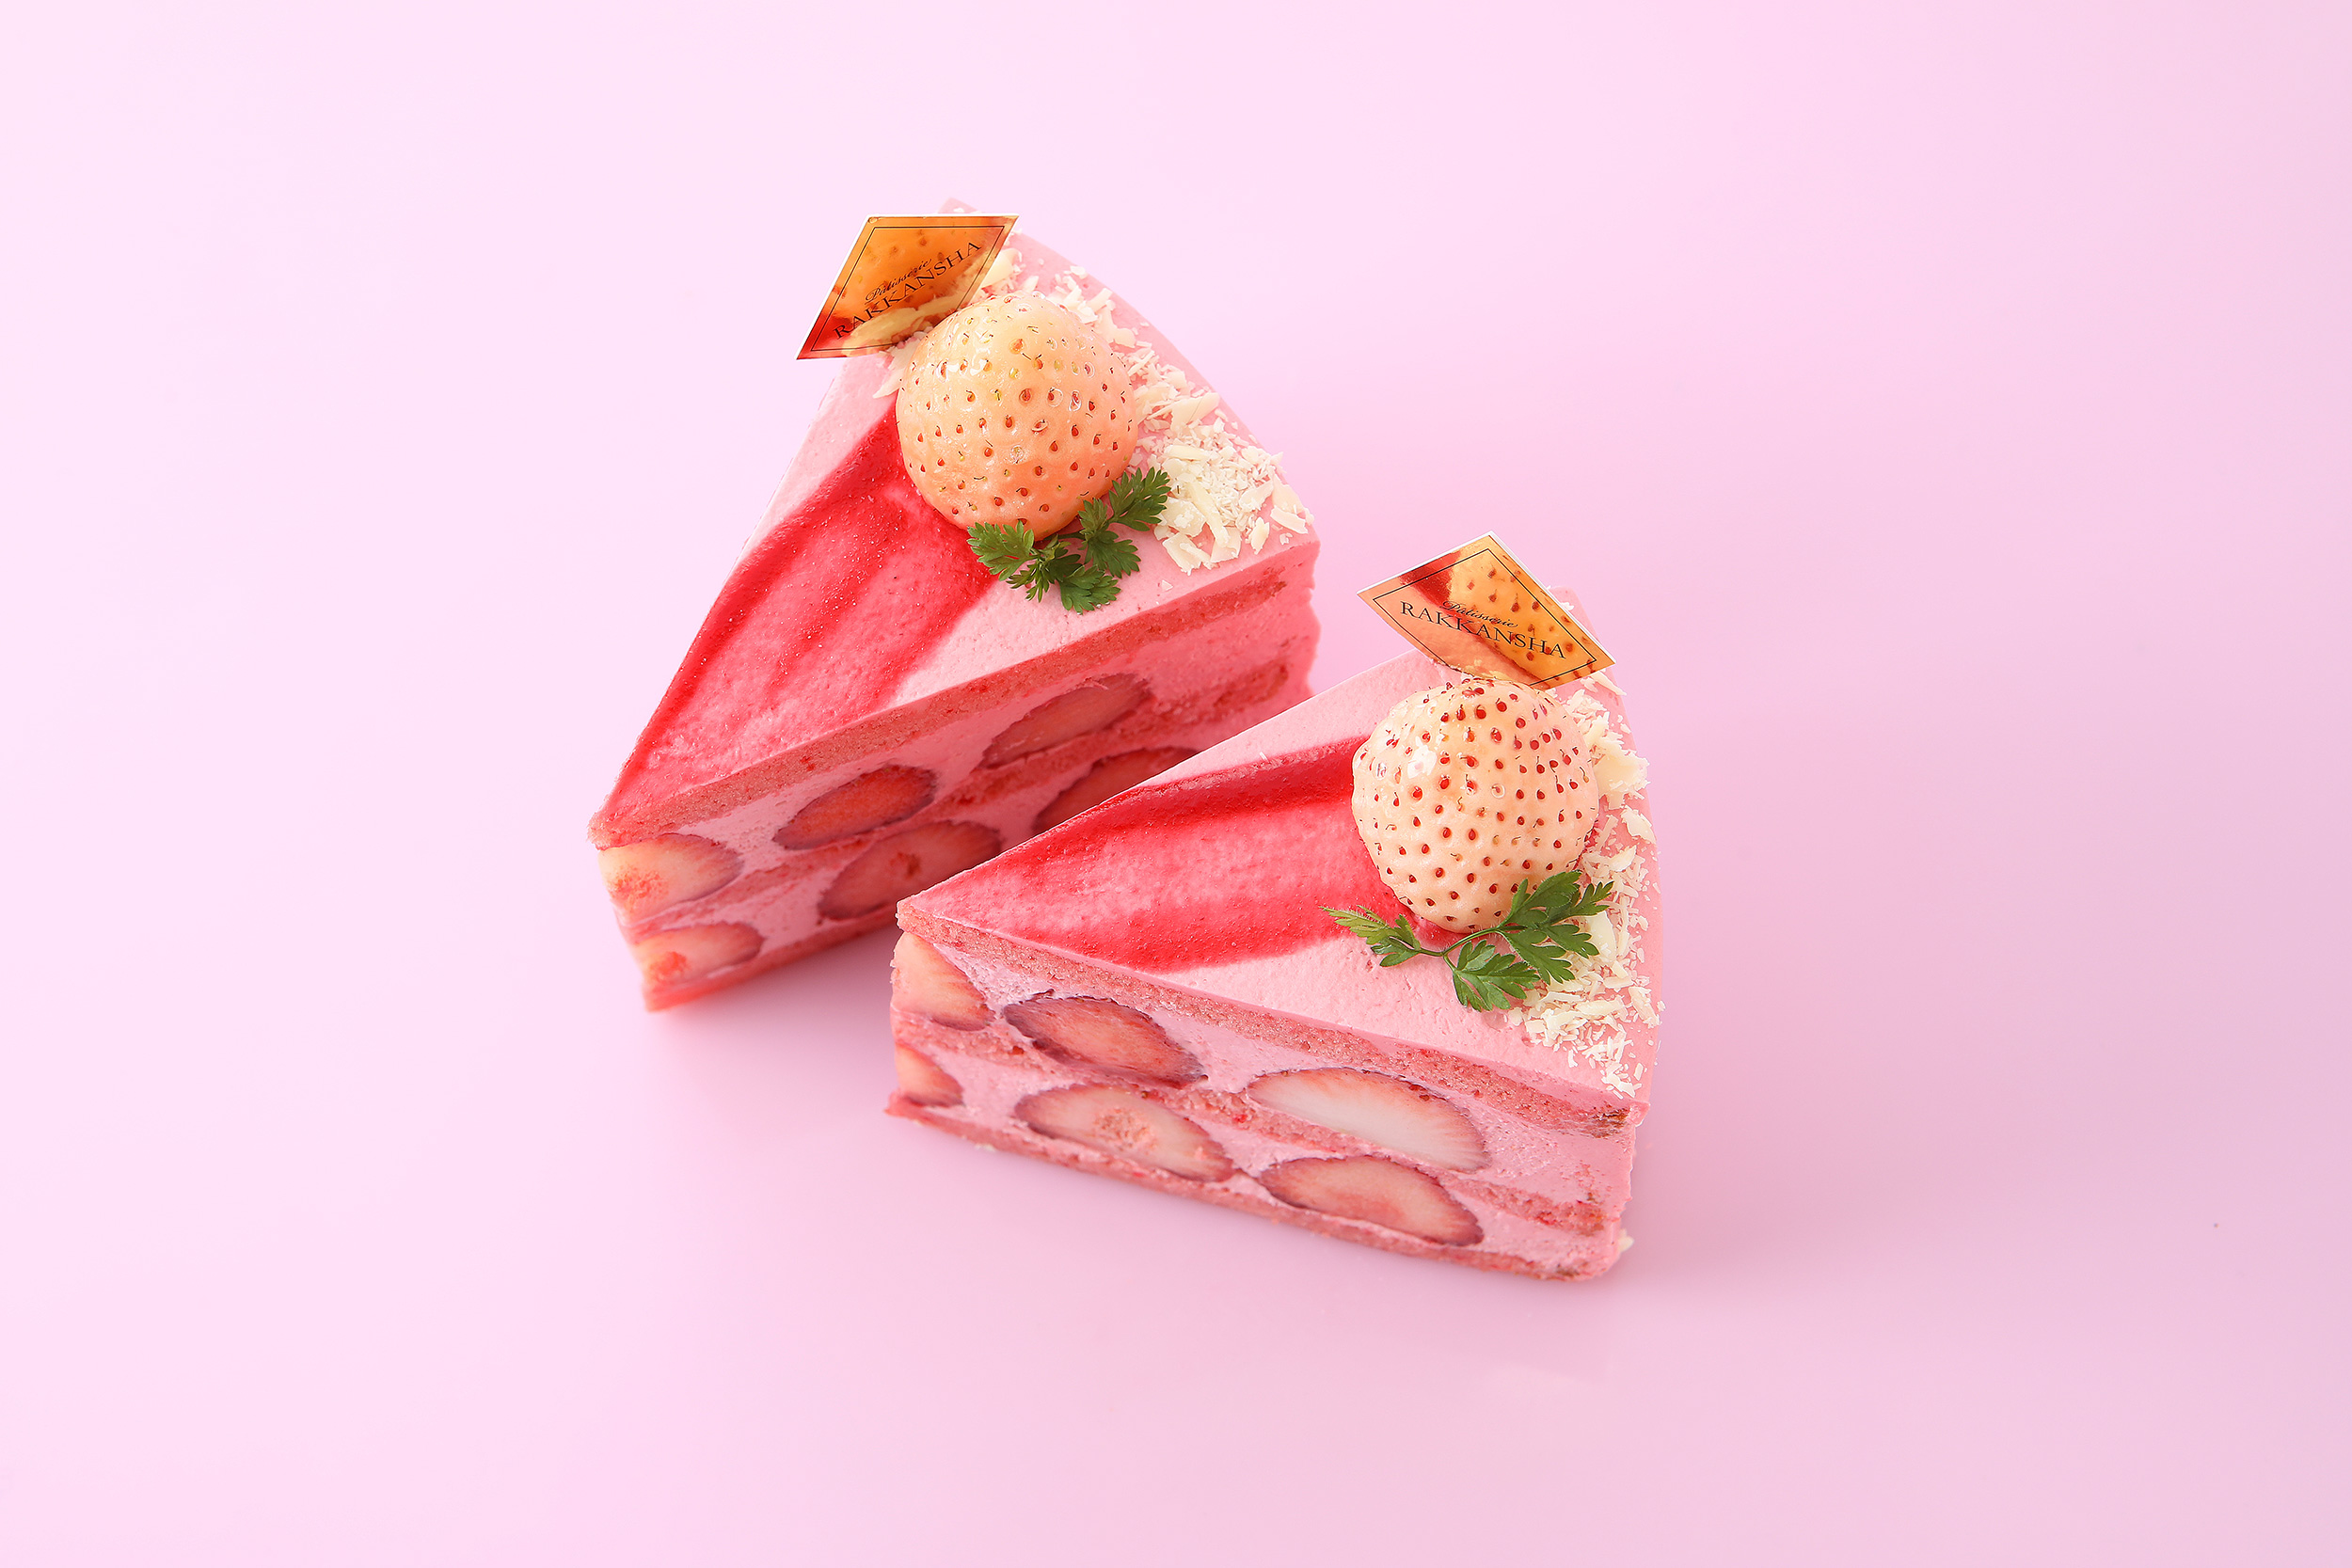 逆転の発想が冴える プレミアム白苺 ショートケーキが新発売 パティスリー洛甘舎のプレスリリース